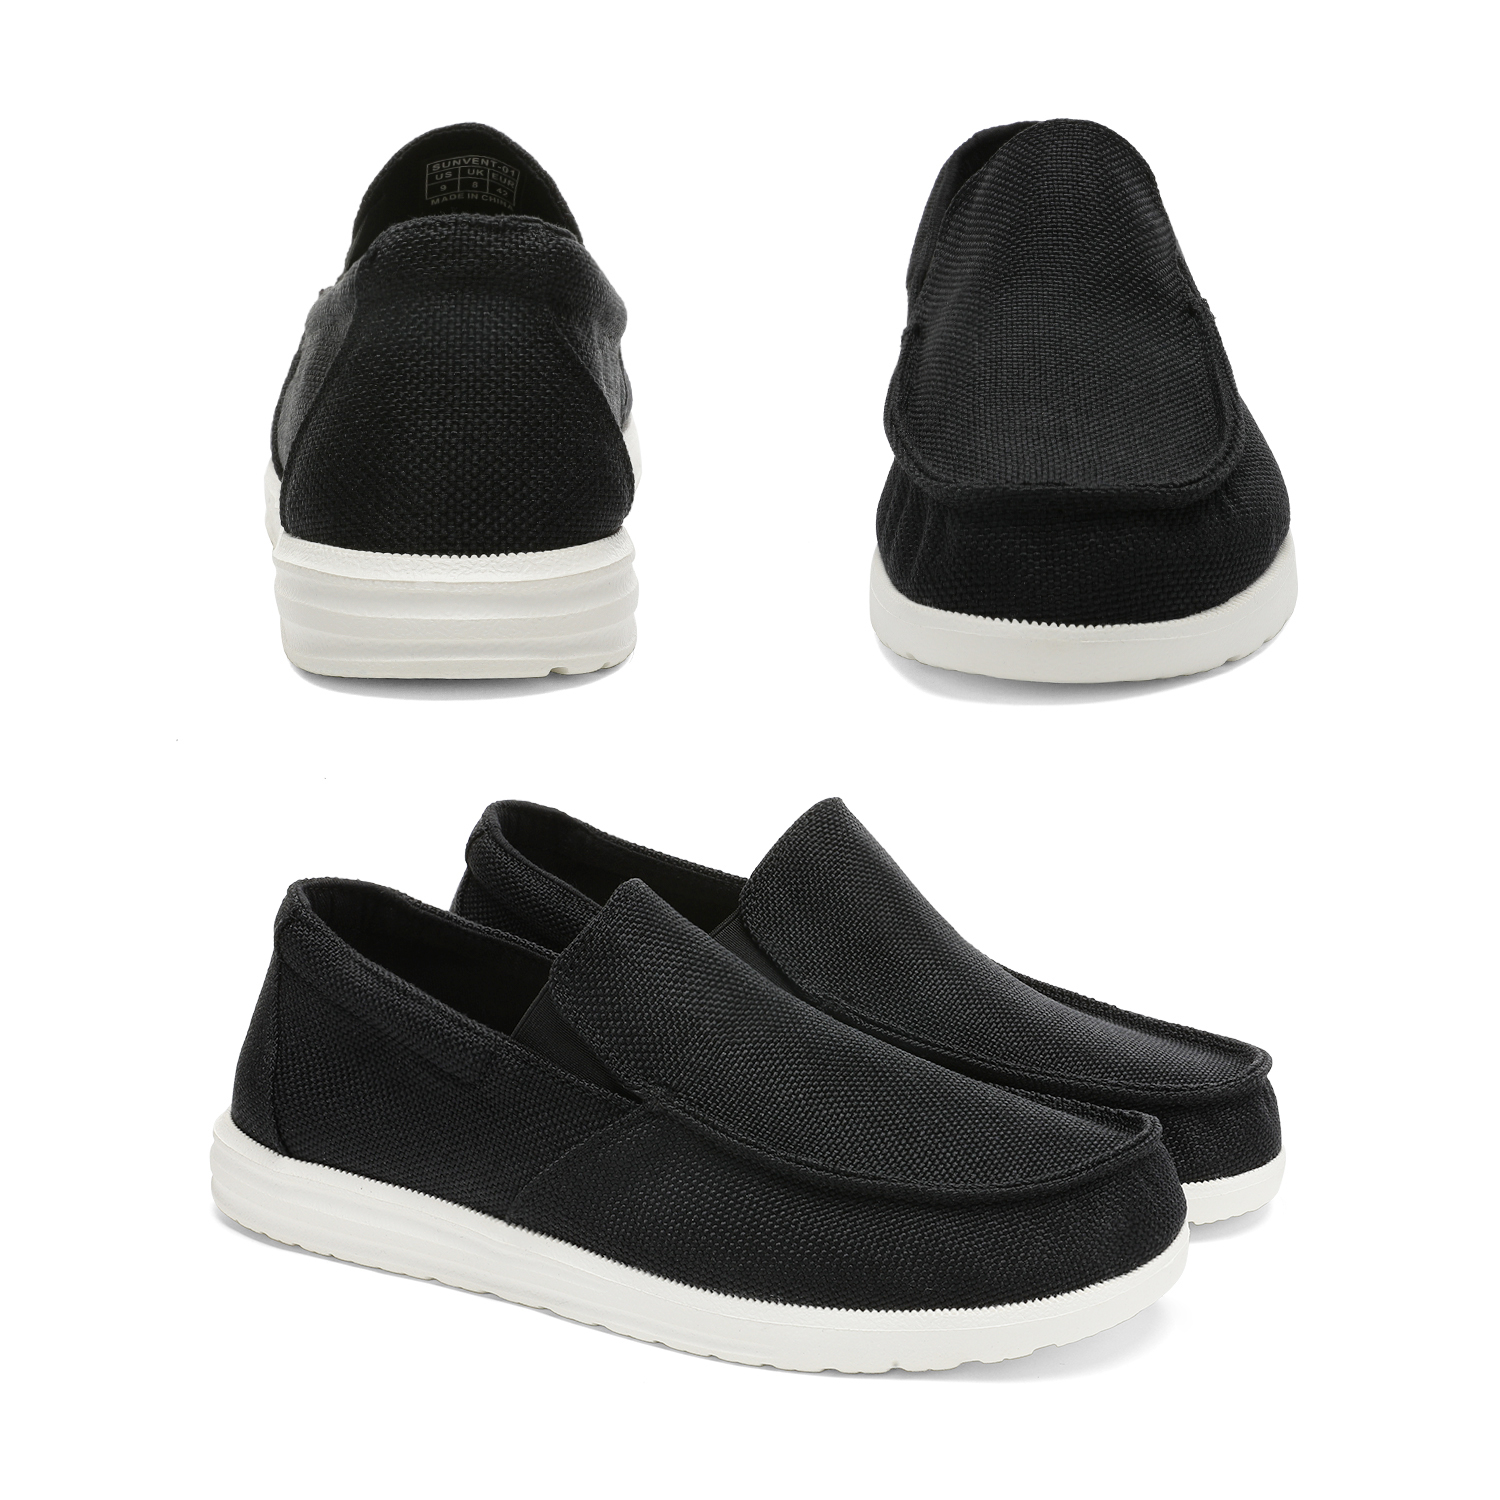 Bruno Marc Men's Slip On Loafer Walking Shoes SUNVENT-01 BLACK size 8.5 - image 4 of 5